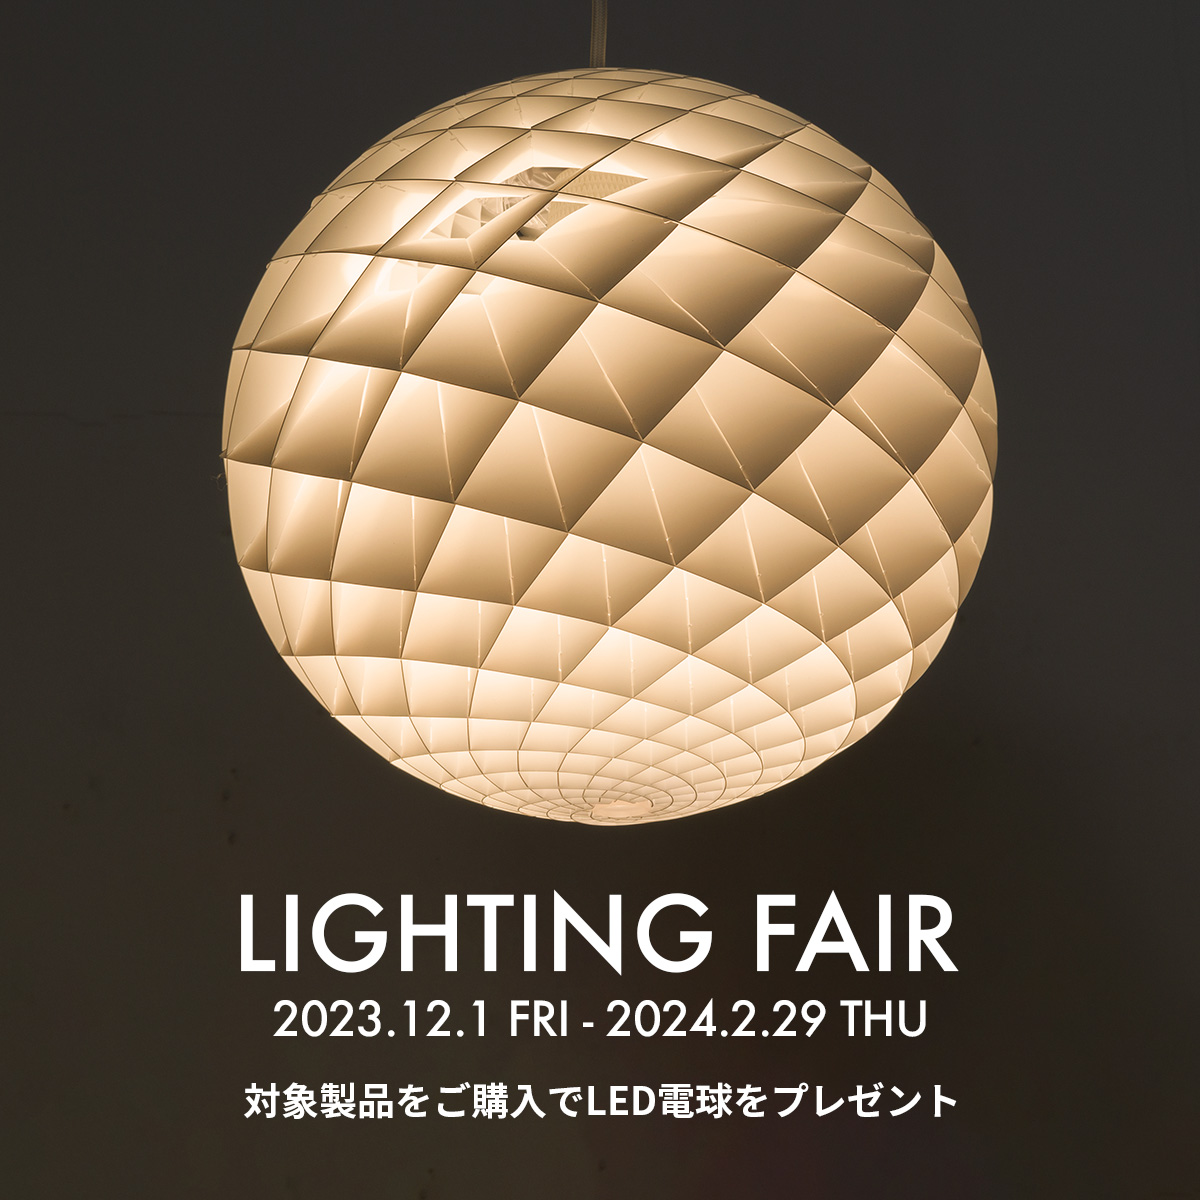 ライティングフェア LED電球 プレゼントキャンペーン